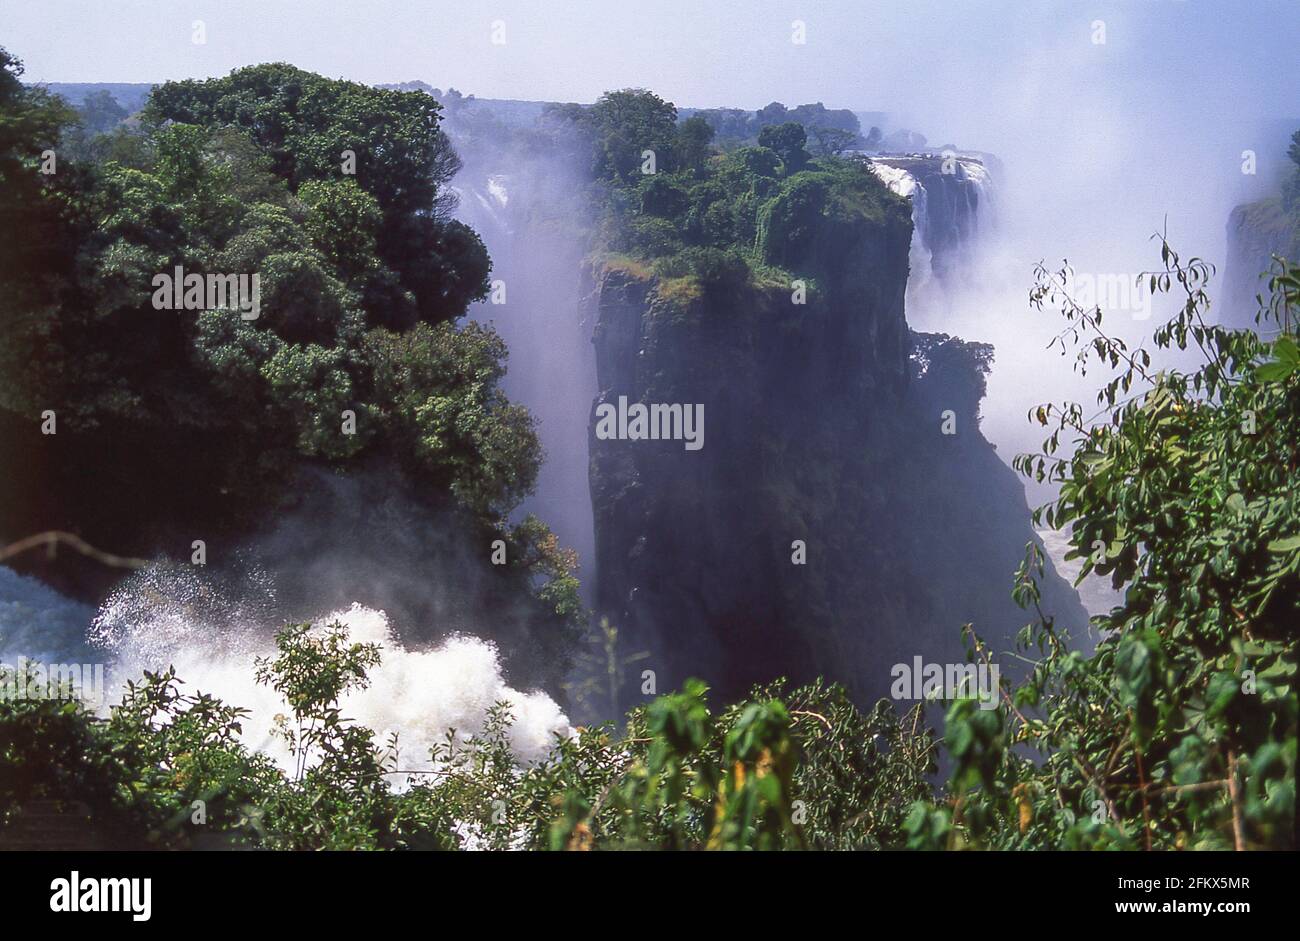 Victoria Falls (Mosi-oa-Tunya), Victoria Falls, Matabeleland, Zimbabwe Banque D'Images